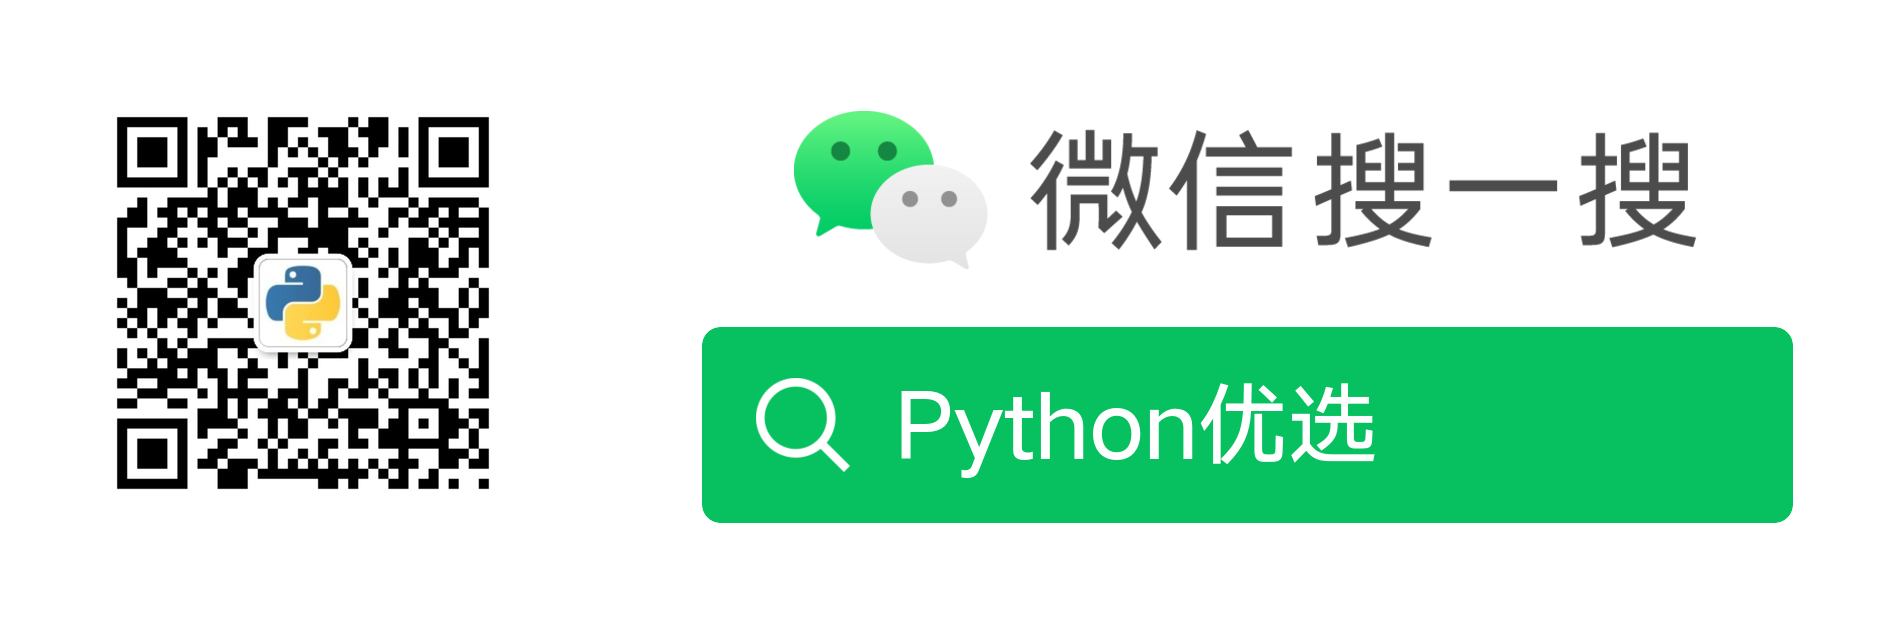 微信公众号：Python优选